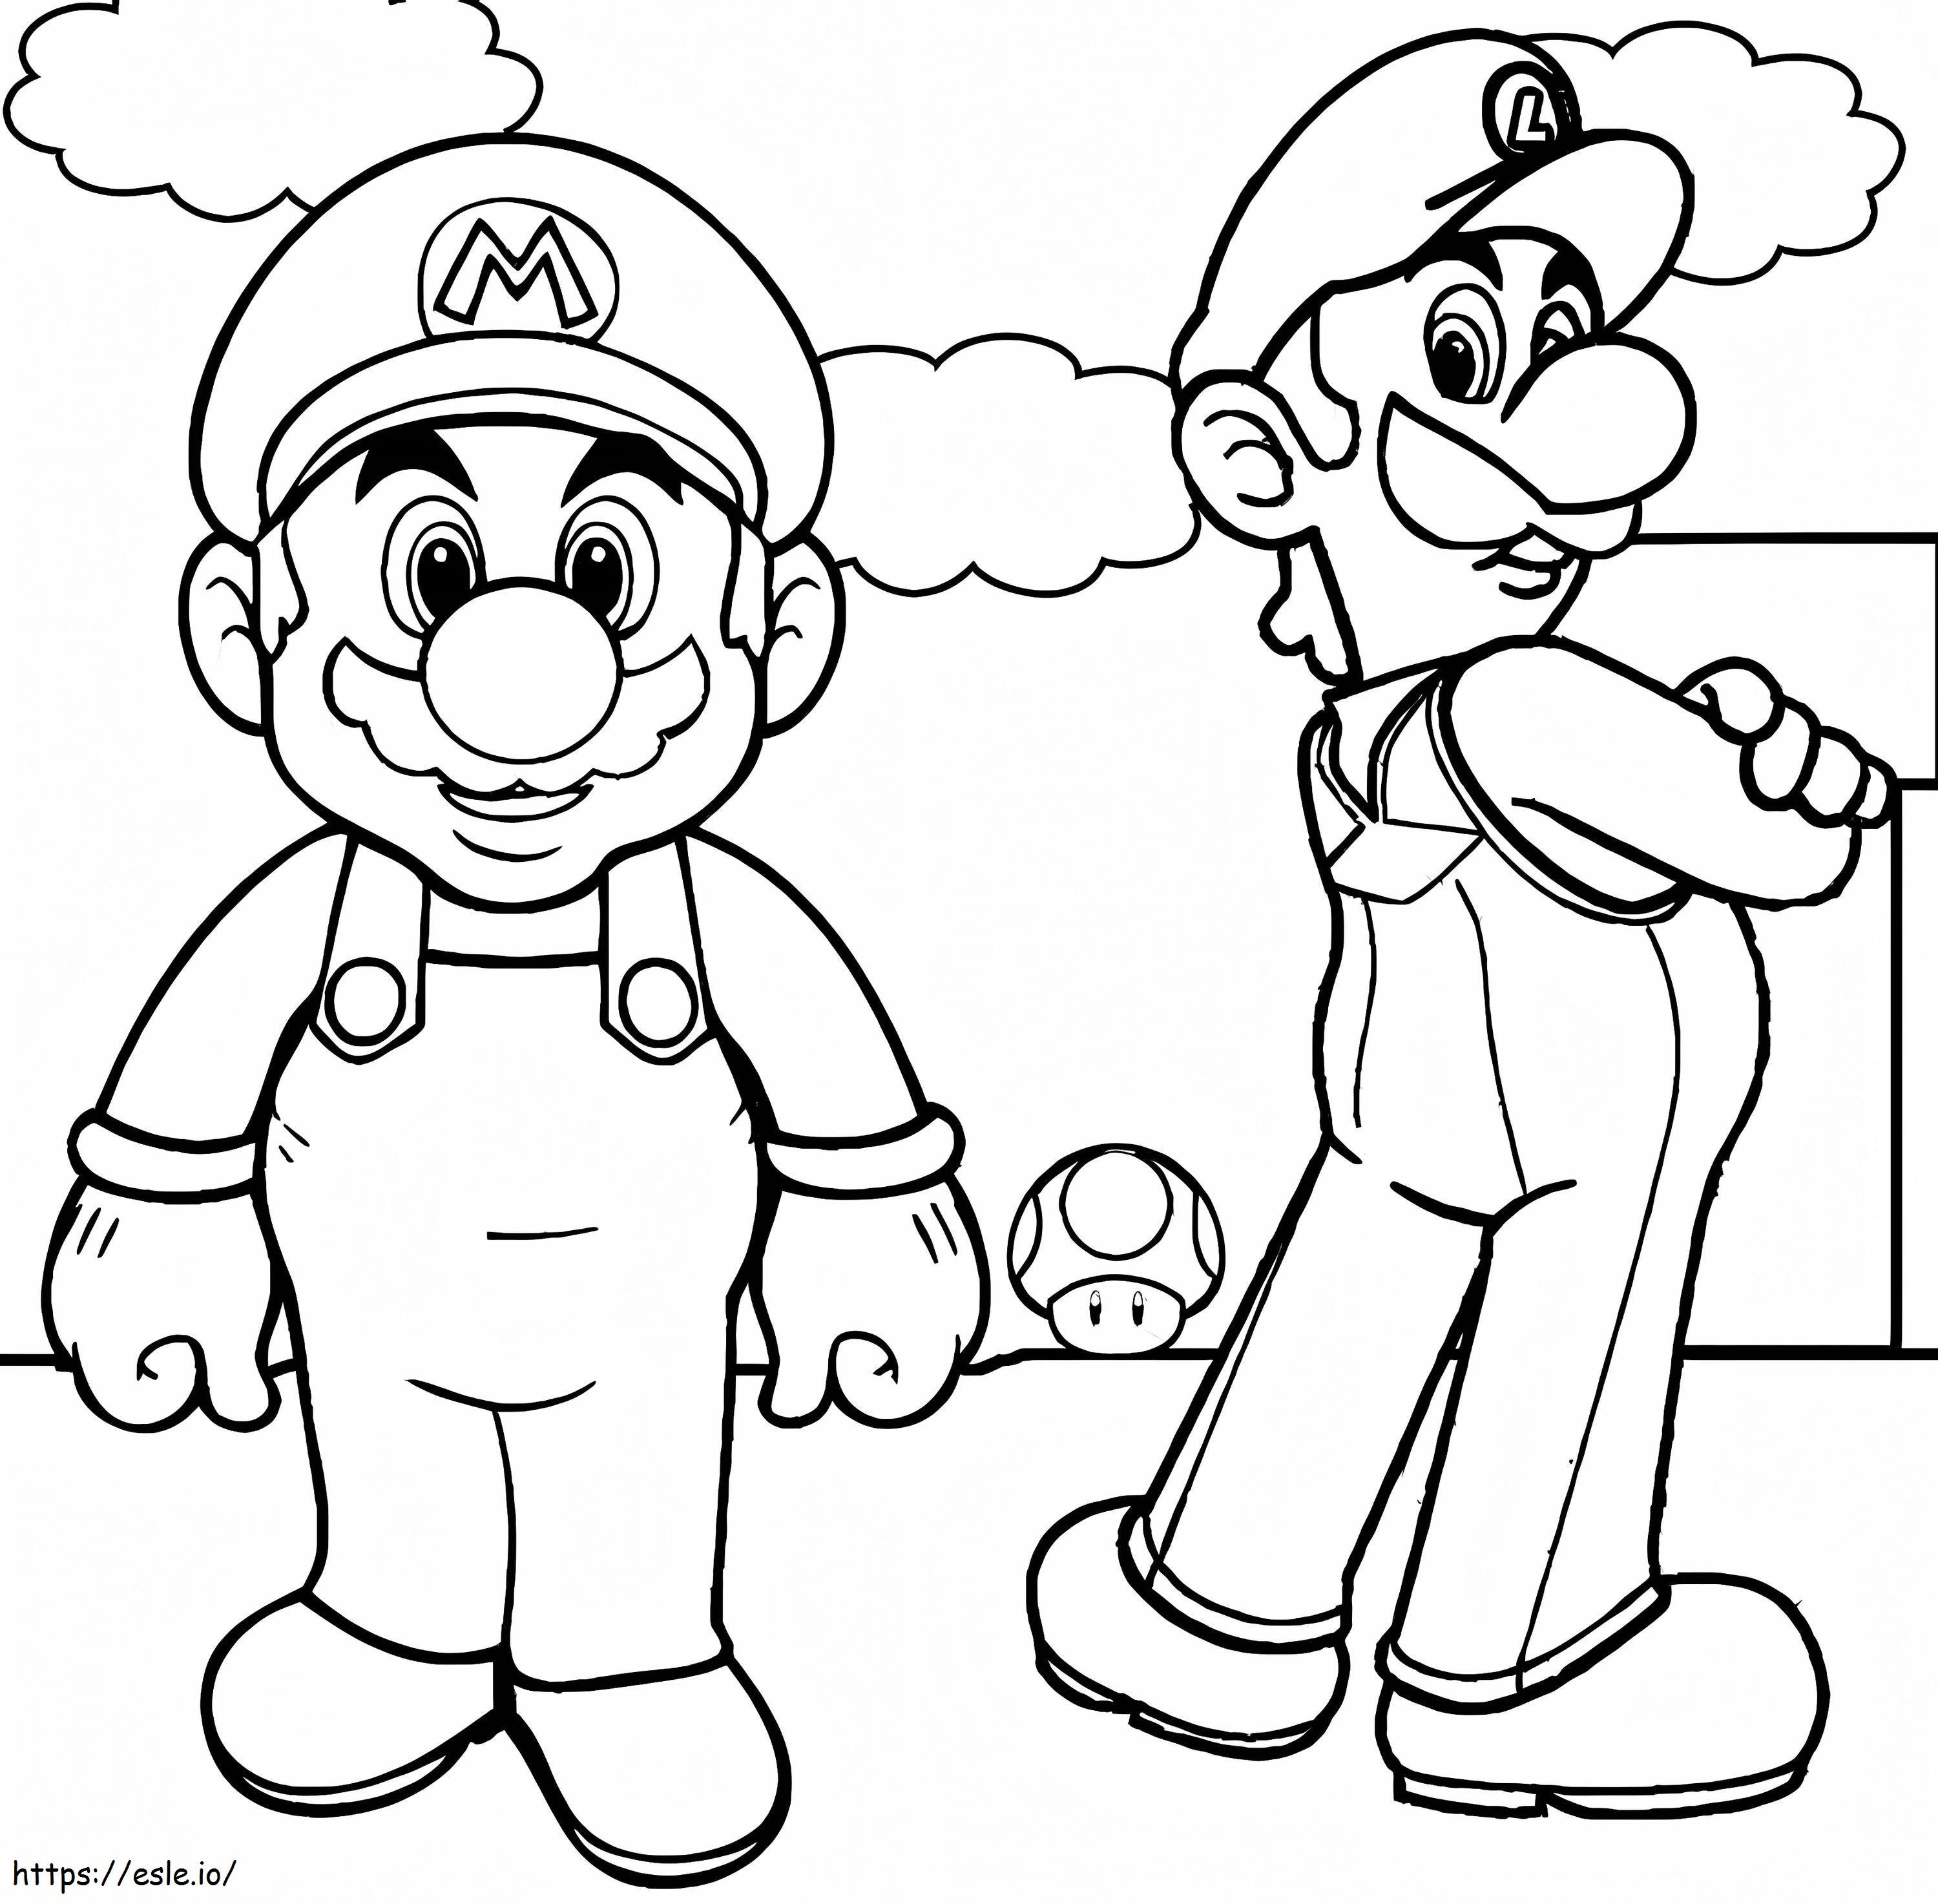 Coloriage Luigi Basico et Mario à imprimer dessin